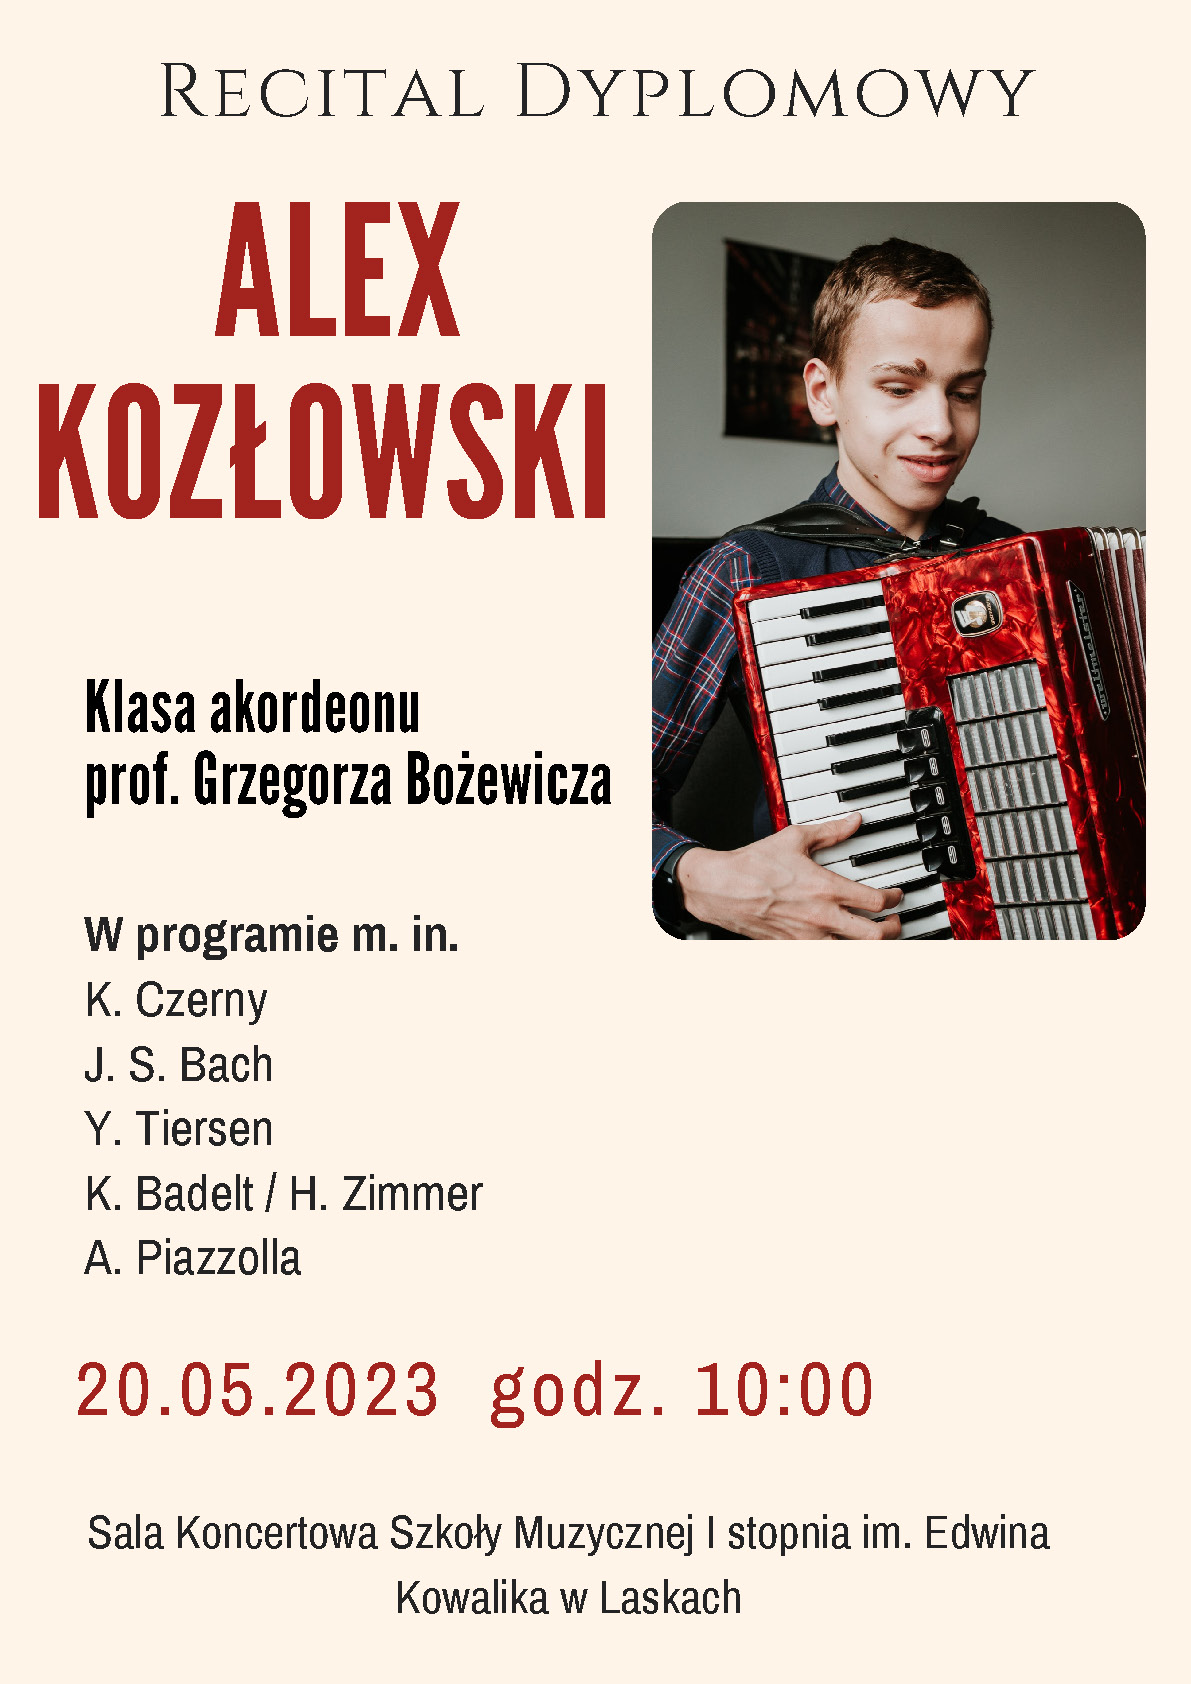 Plakat promujący recital dyplomowy Alexa Kozłowskiego.